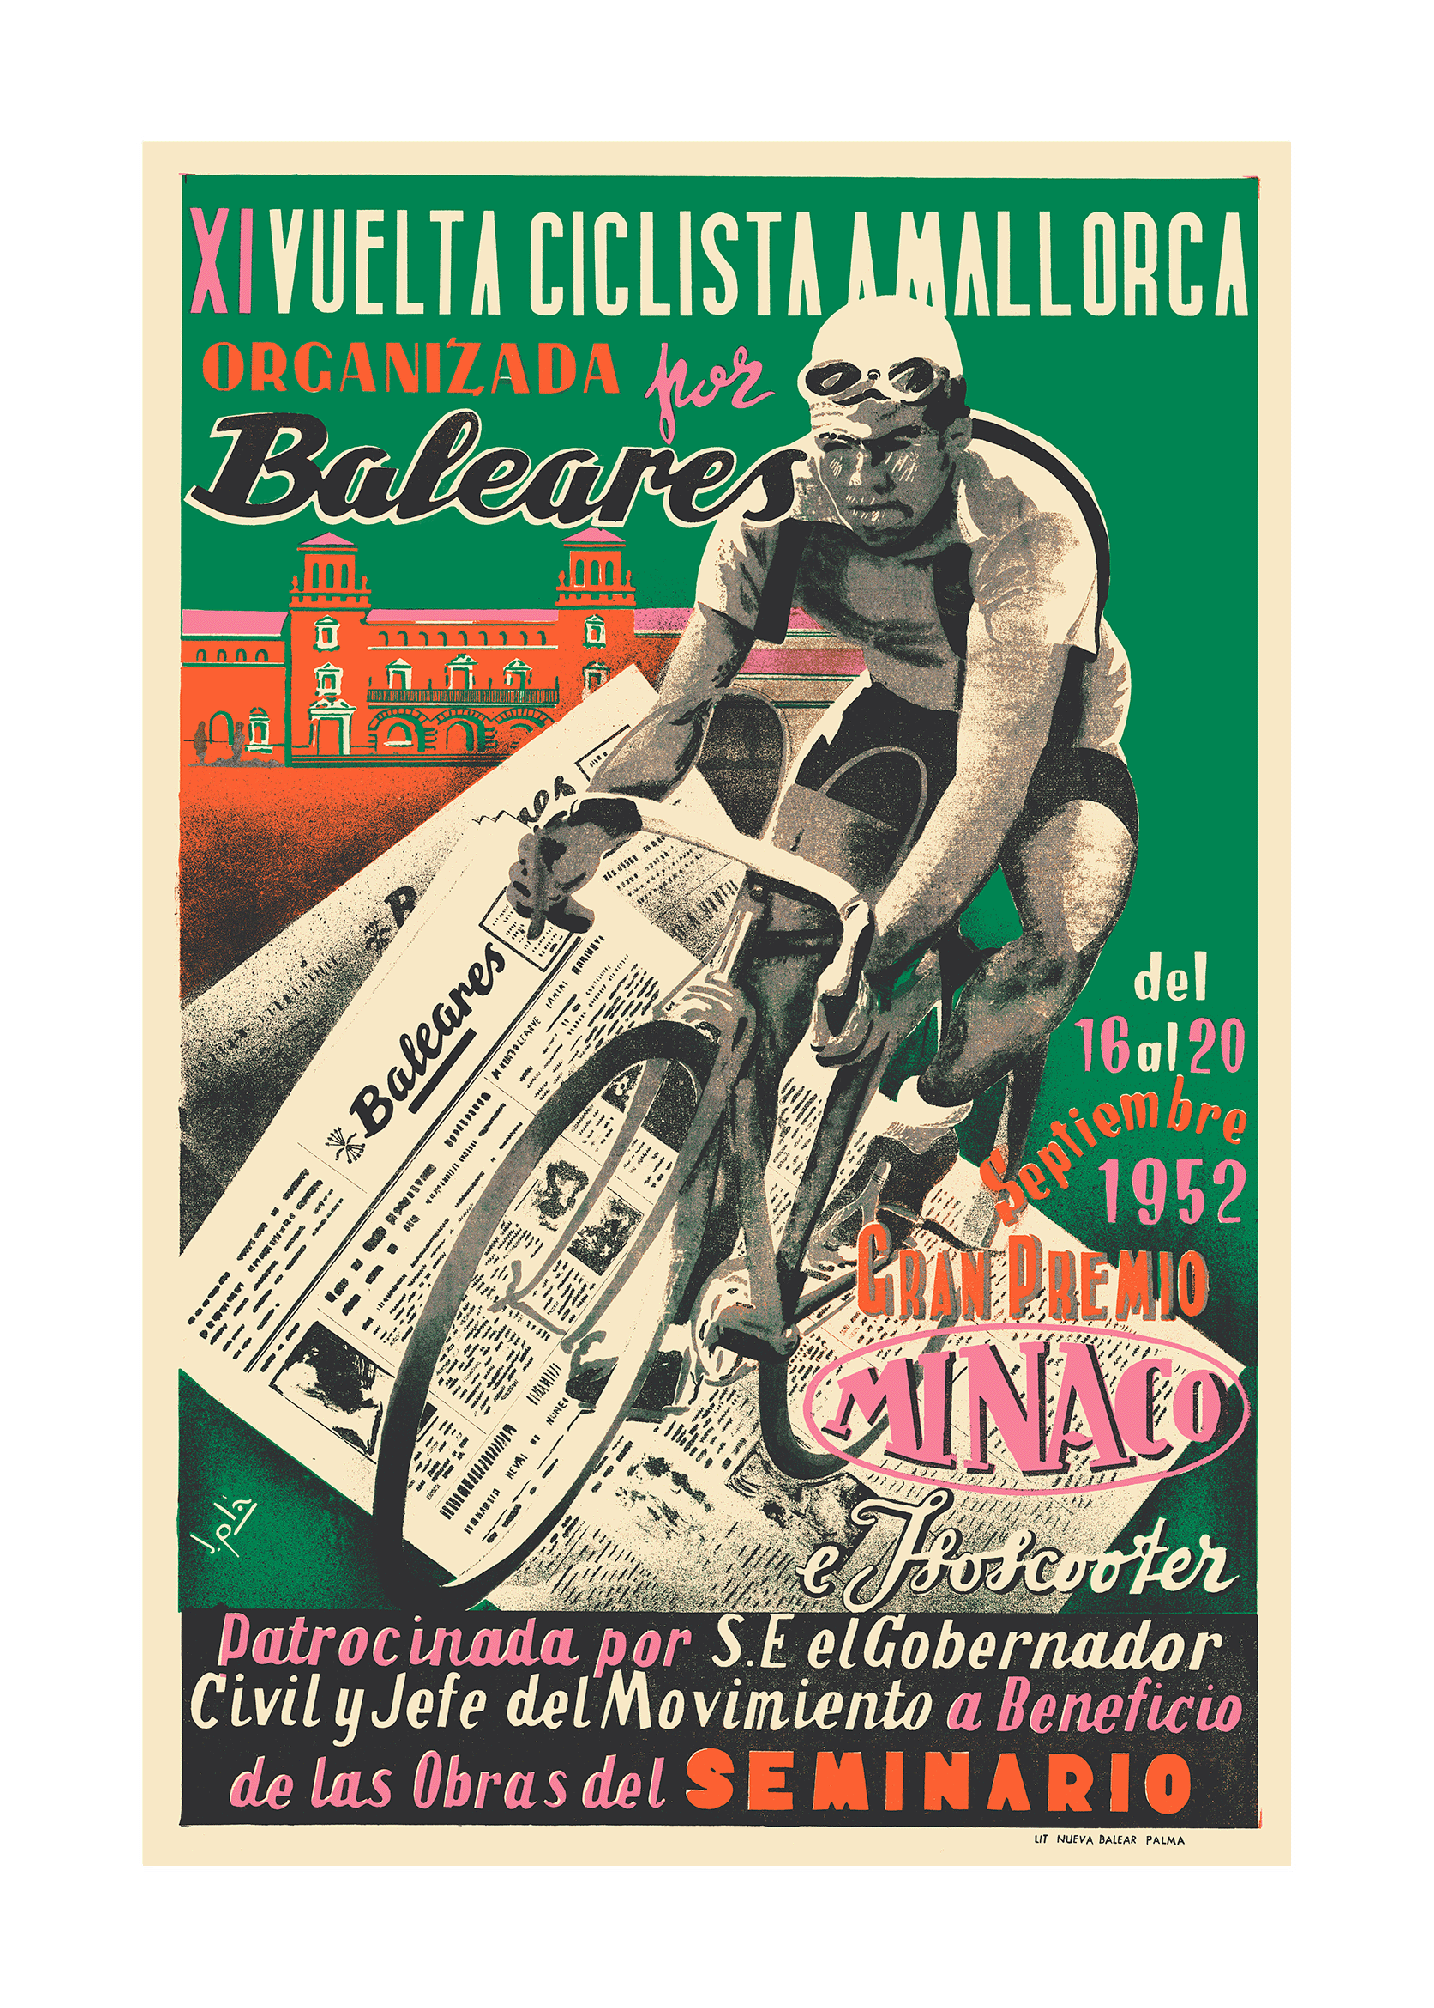 XI Vuelta Ciclista a Mallorca, 1952.